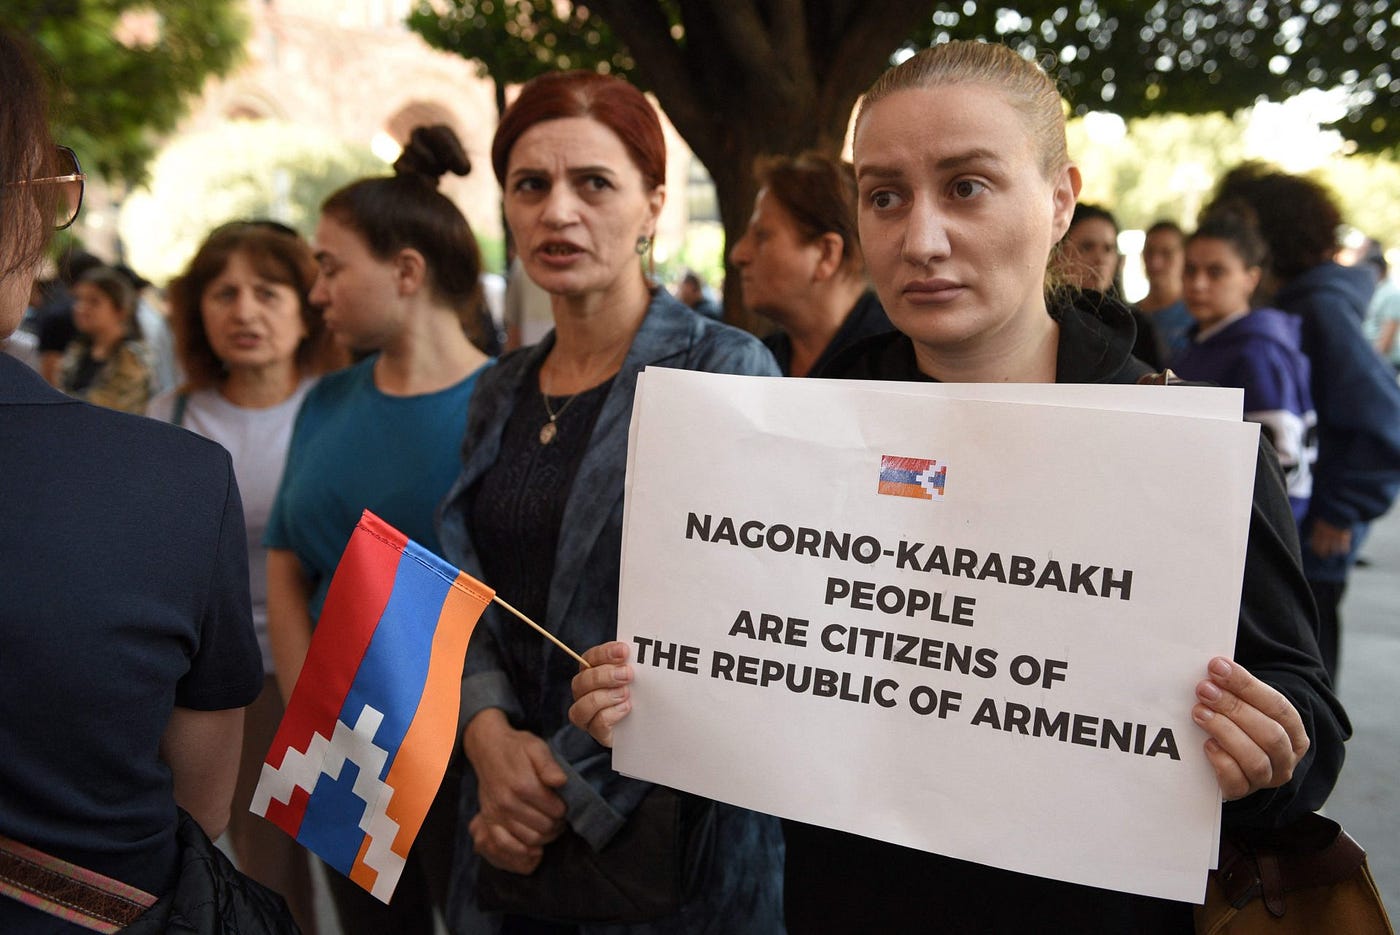 As origens do conflito entre Armênia e Azerbaijão em Nagorno-Karabakh -  Revista Galileu